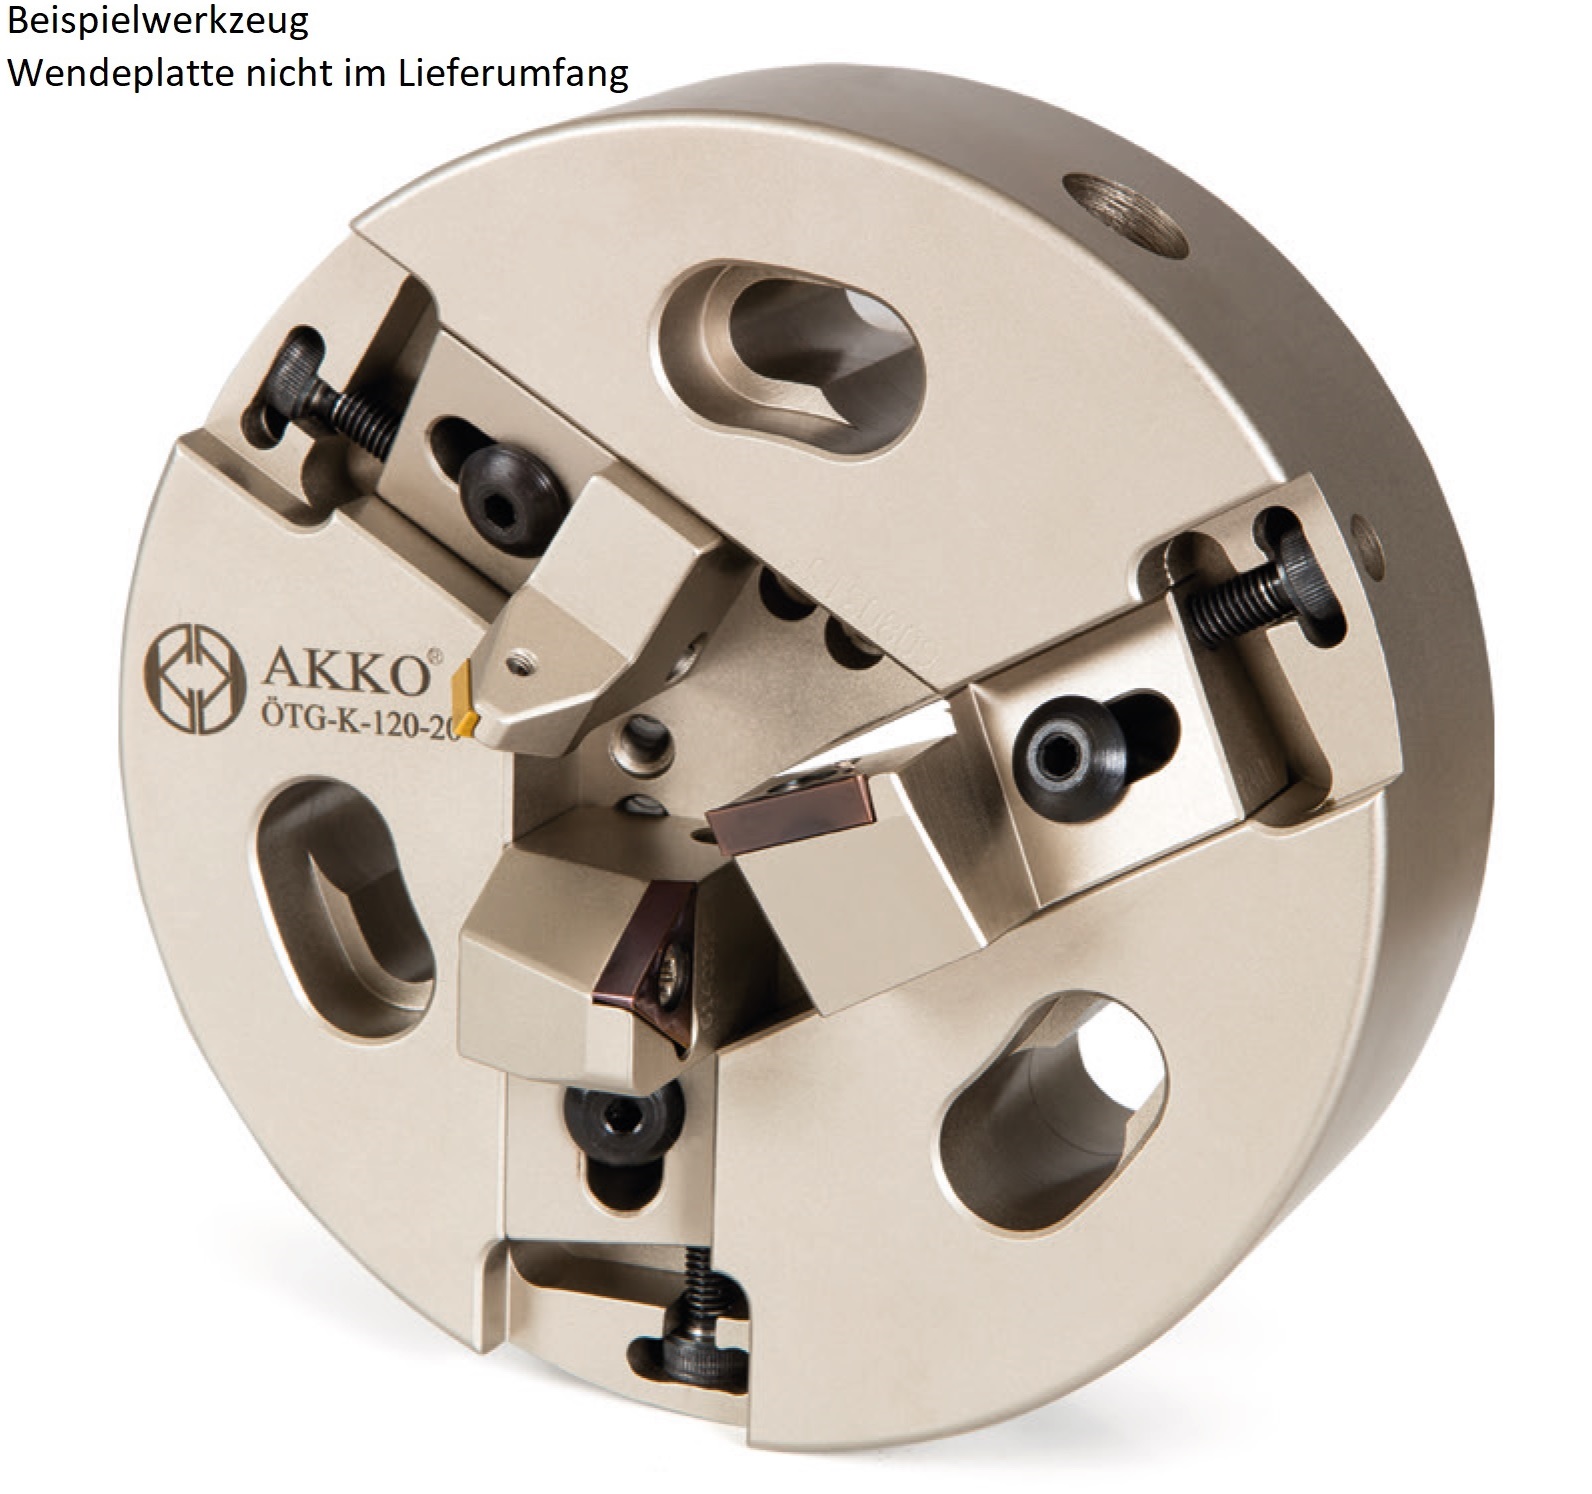 AKKO-Rohrenden-Anfaswerkzeug Dmax 51-75 mm, Dmin 51 mm, kompatibel mit ISO-Wendeplatte TC.. 16T3..
